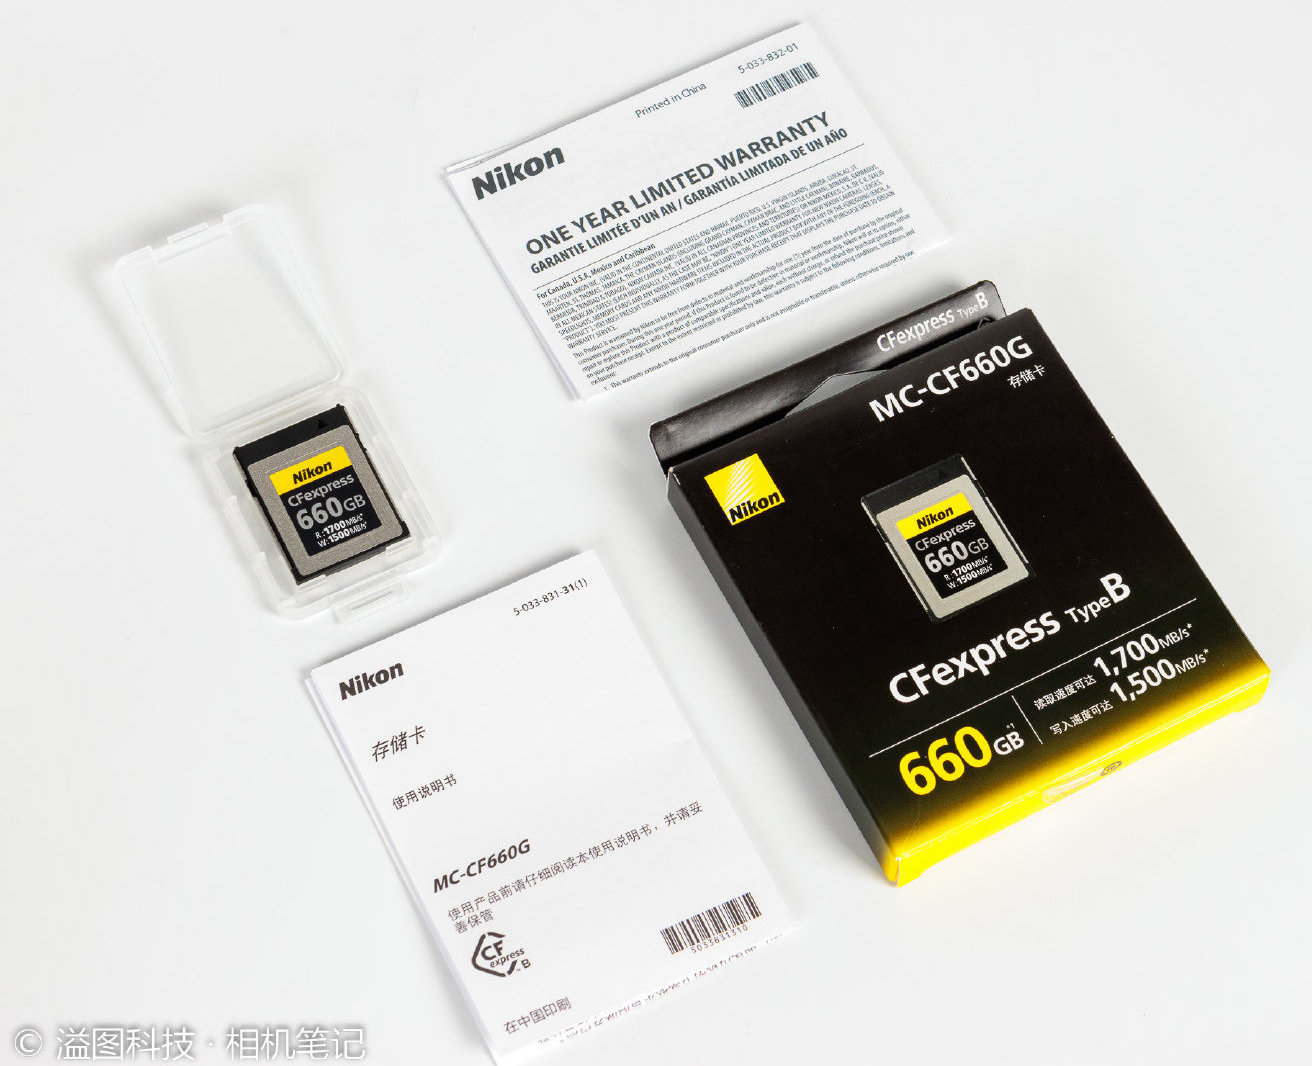 市場 marche storeニコン CFexpress Type B メモリーカード 660GB MC-CF660G ミラーレス一眼 